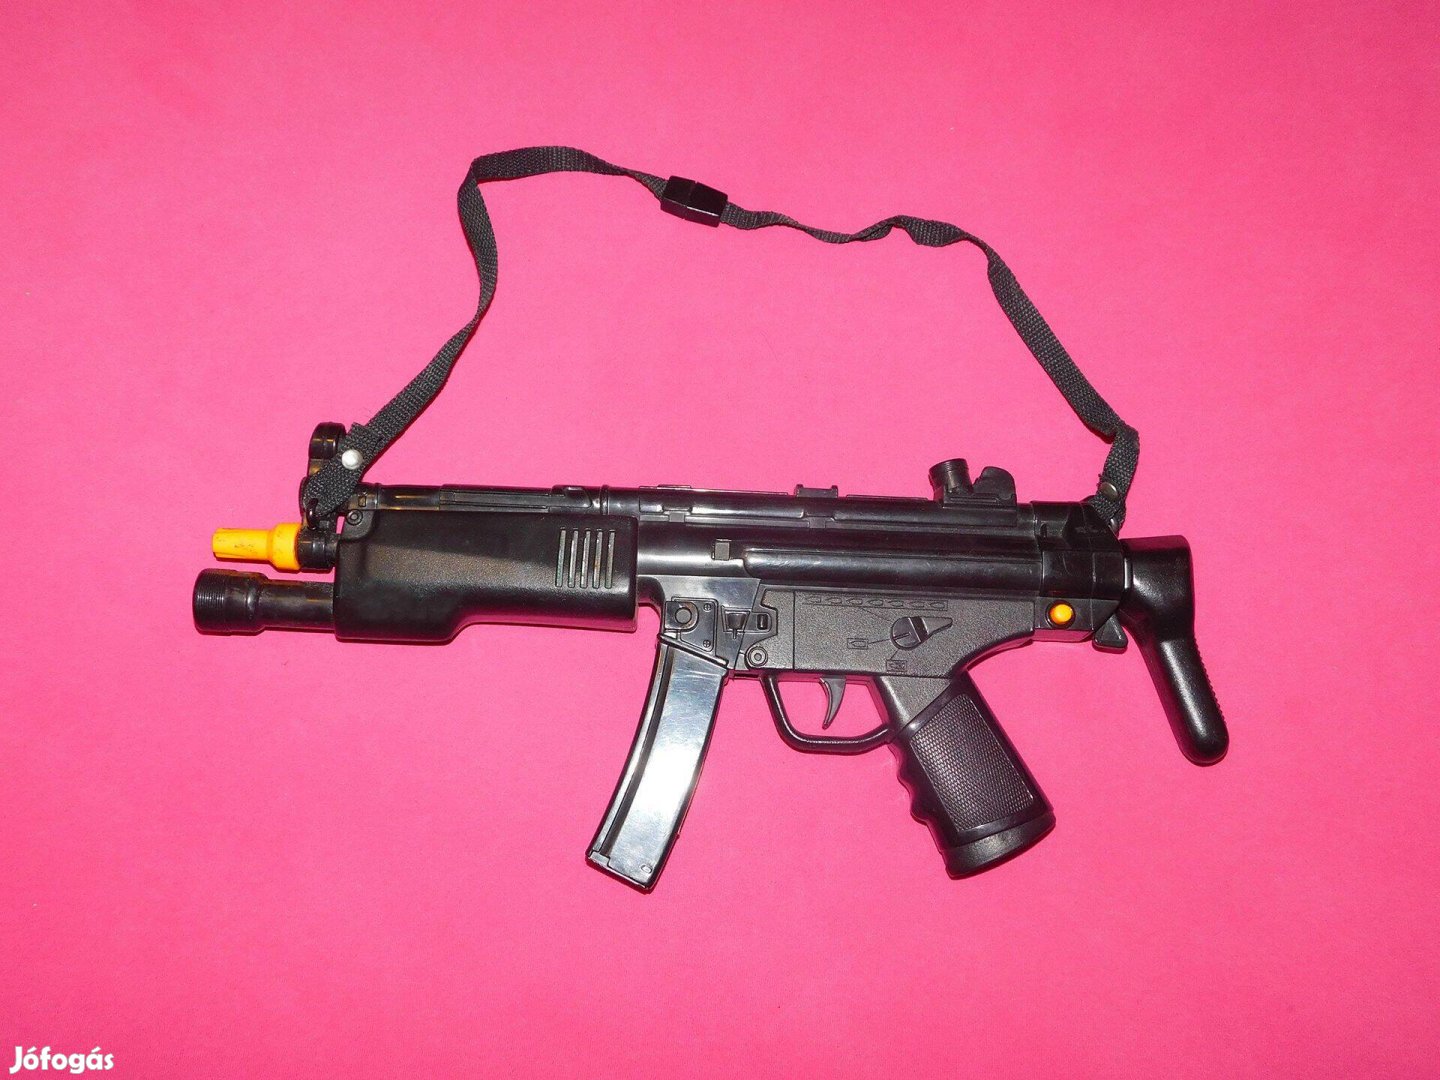 Műanyag játékfegyver, játékkarabély, kihúzható válltámasszal, 45 cm